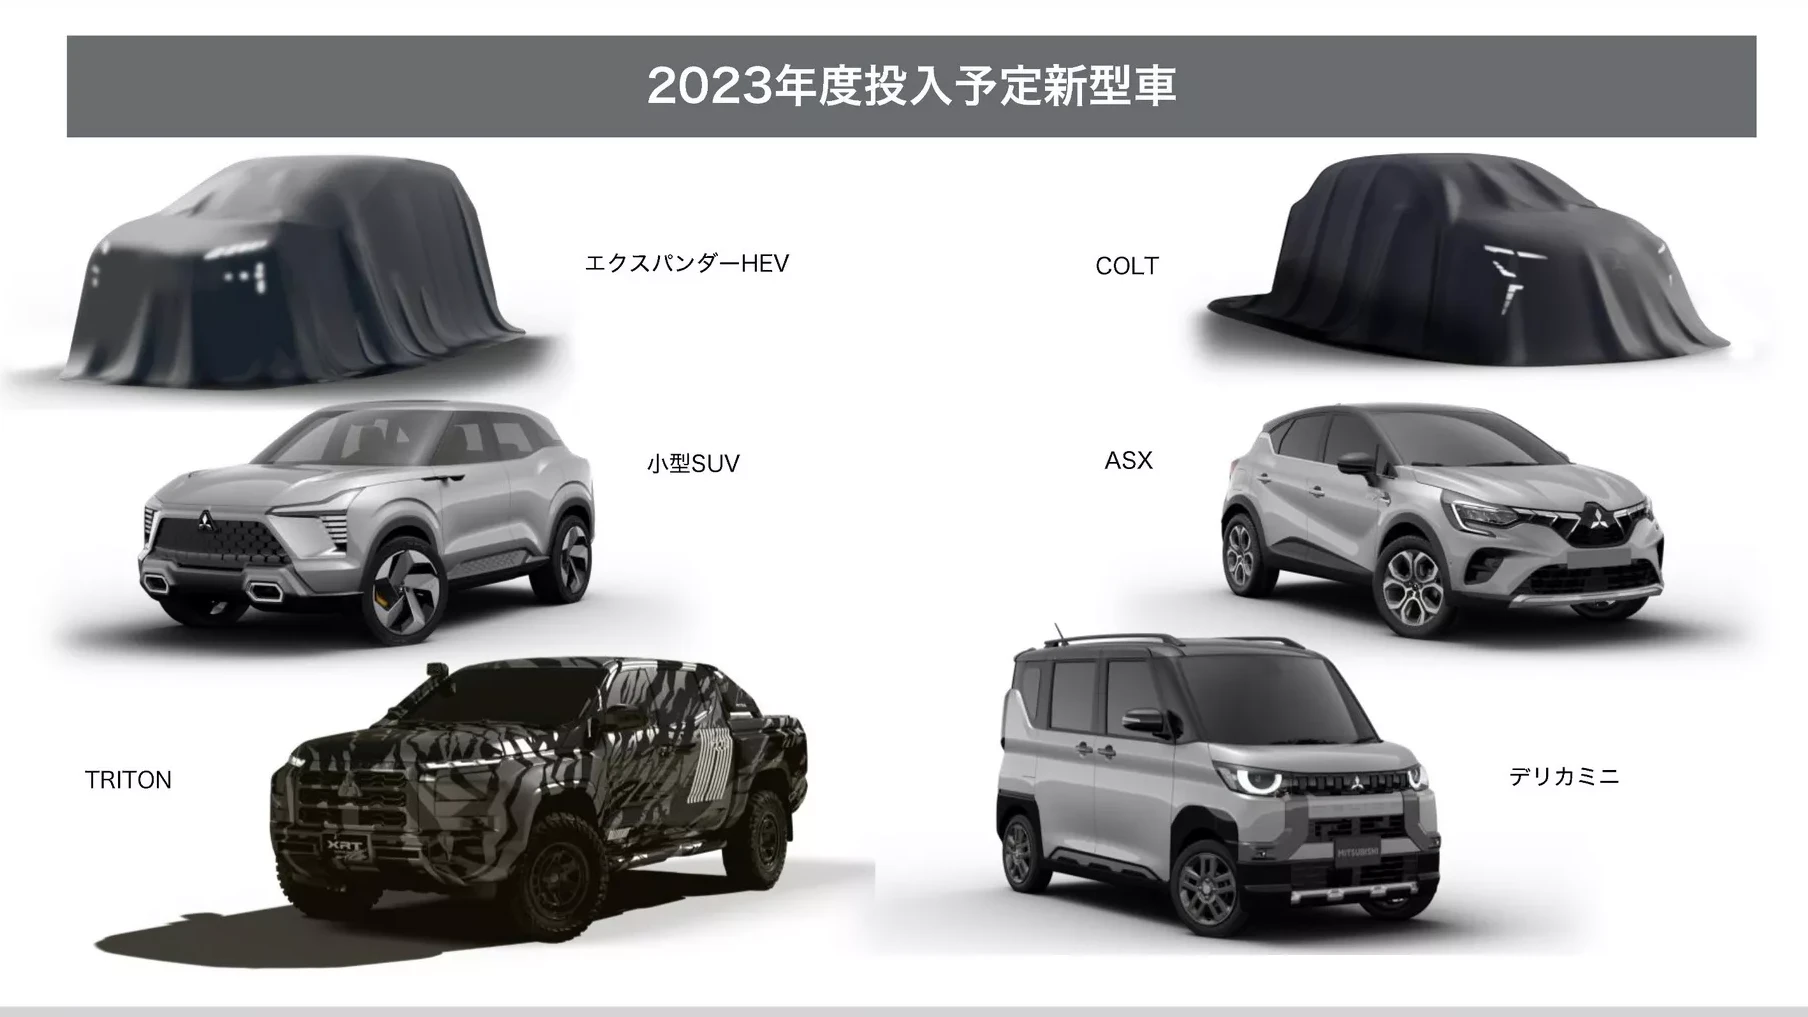 Mitsubishi sẽ ra mắt đến 6 mẫu xe mới trong năm 2023, có cả Xpander hybrid